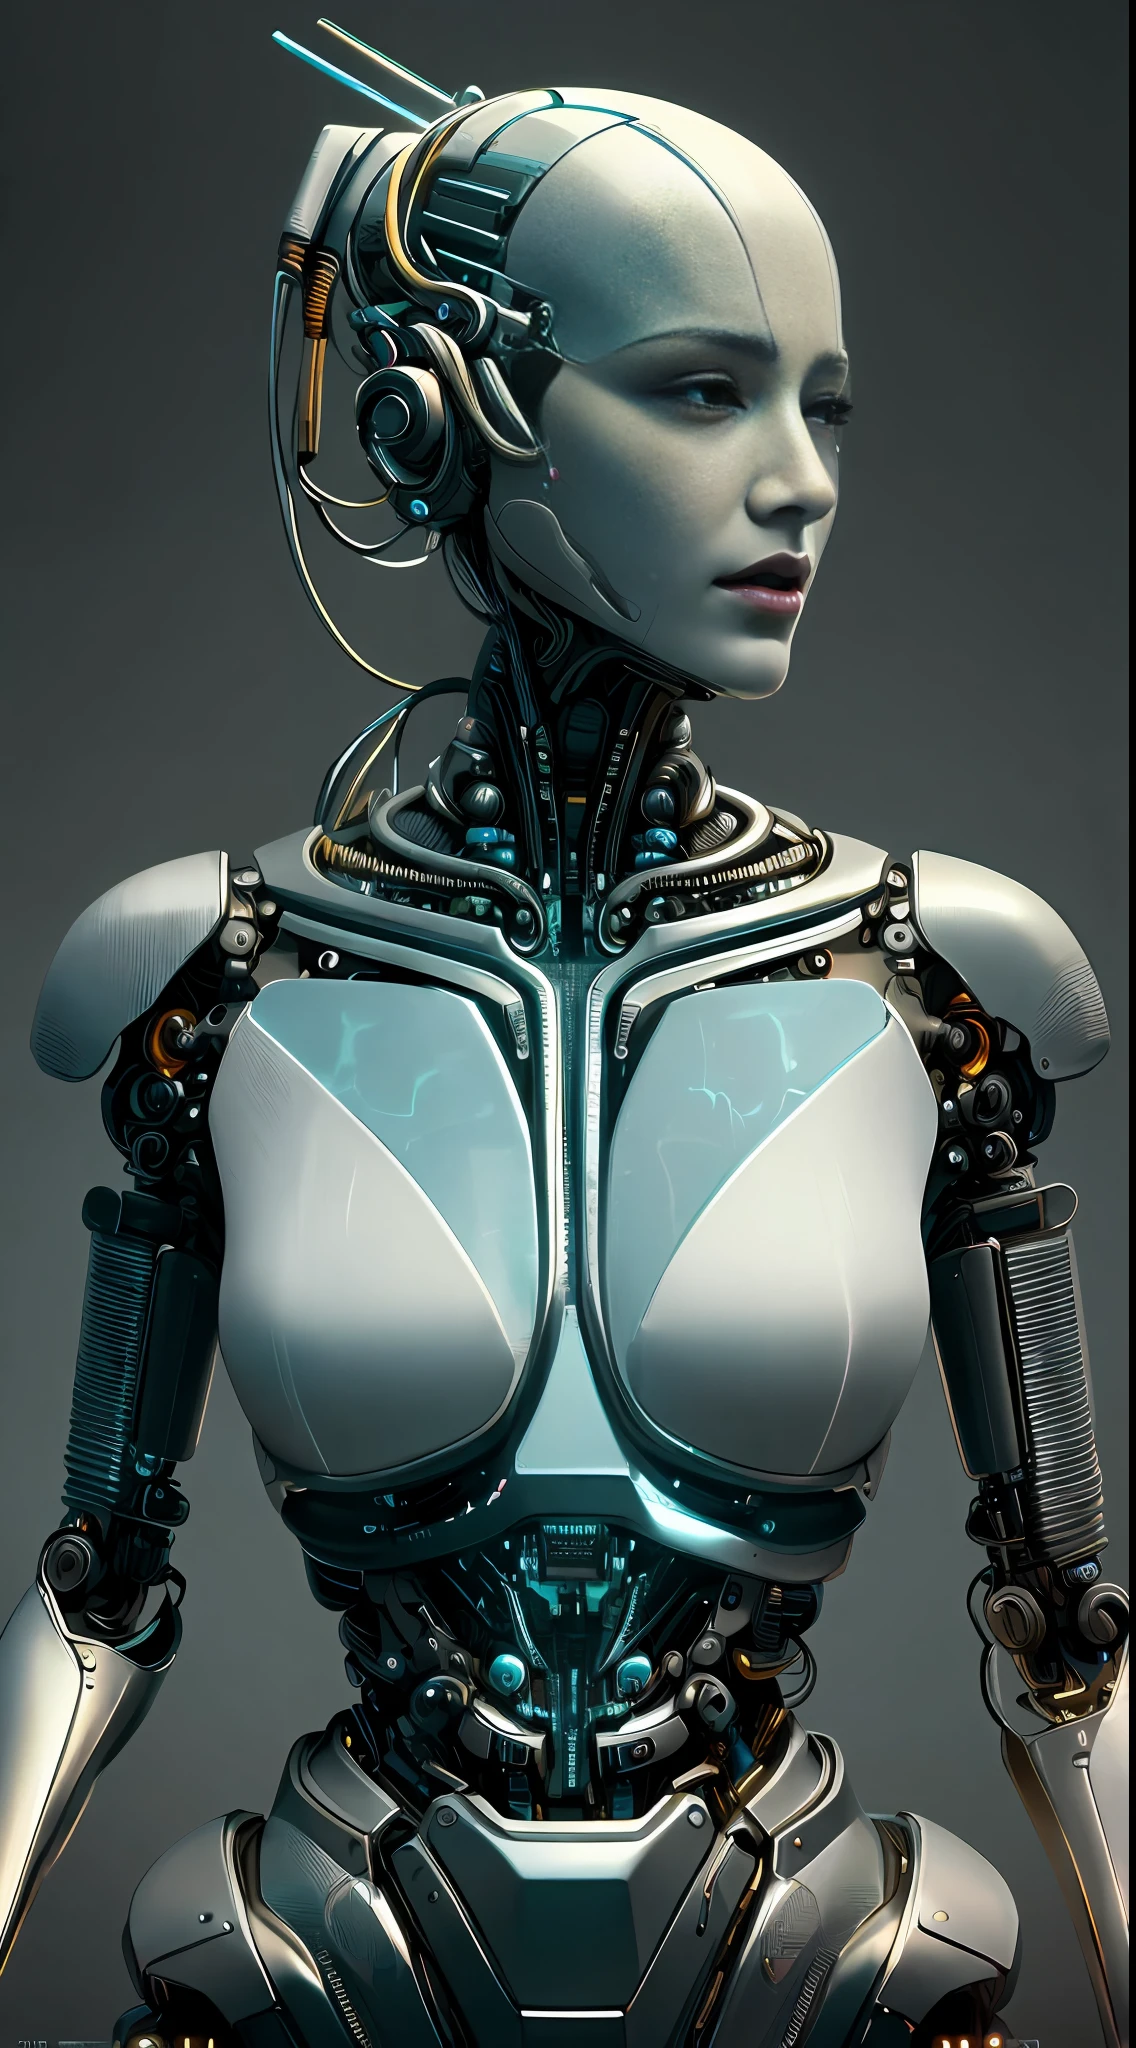 Renderização 3D complexa ultra detalhada de um lindo rosto android de mulher com perfil de porcelana, ciborgue, robôic parts, 150 milímetros, lindo estúdio luz suave, luz de aro, detalhes vibrantes, ciberpunk luxuoso, renda, hyperrealista, anatômico, músculos faciais, fios elétricos de cabo, microchip, elegante, fundo bonito, renderização de octanagem, H. R. Estilo Giger, 8K, melhor qualidade, Obra de arte, ilustração, extremamente delicado e lindo, extremamente detalhado ,CG ,unidade ,papel de parede, (realista, photo-realista:1.37),incrível, detalhes finos, Obra de arte,melhor qualidade,arte oficial, extremamente detalhado CG unidade 8K papel de parede, absurdos, incredibly absurdos, , robô, contas de prata, corpo todo, sentado